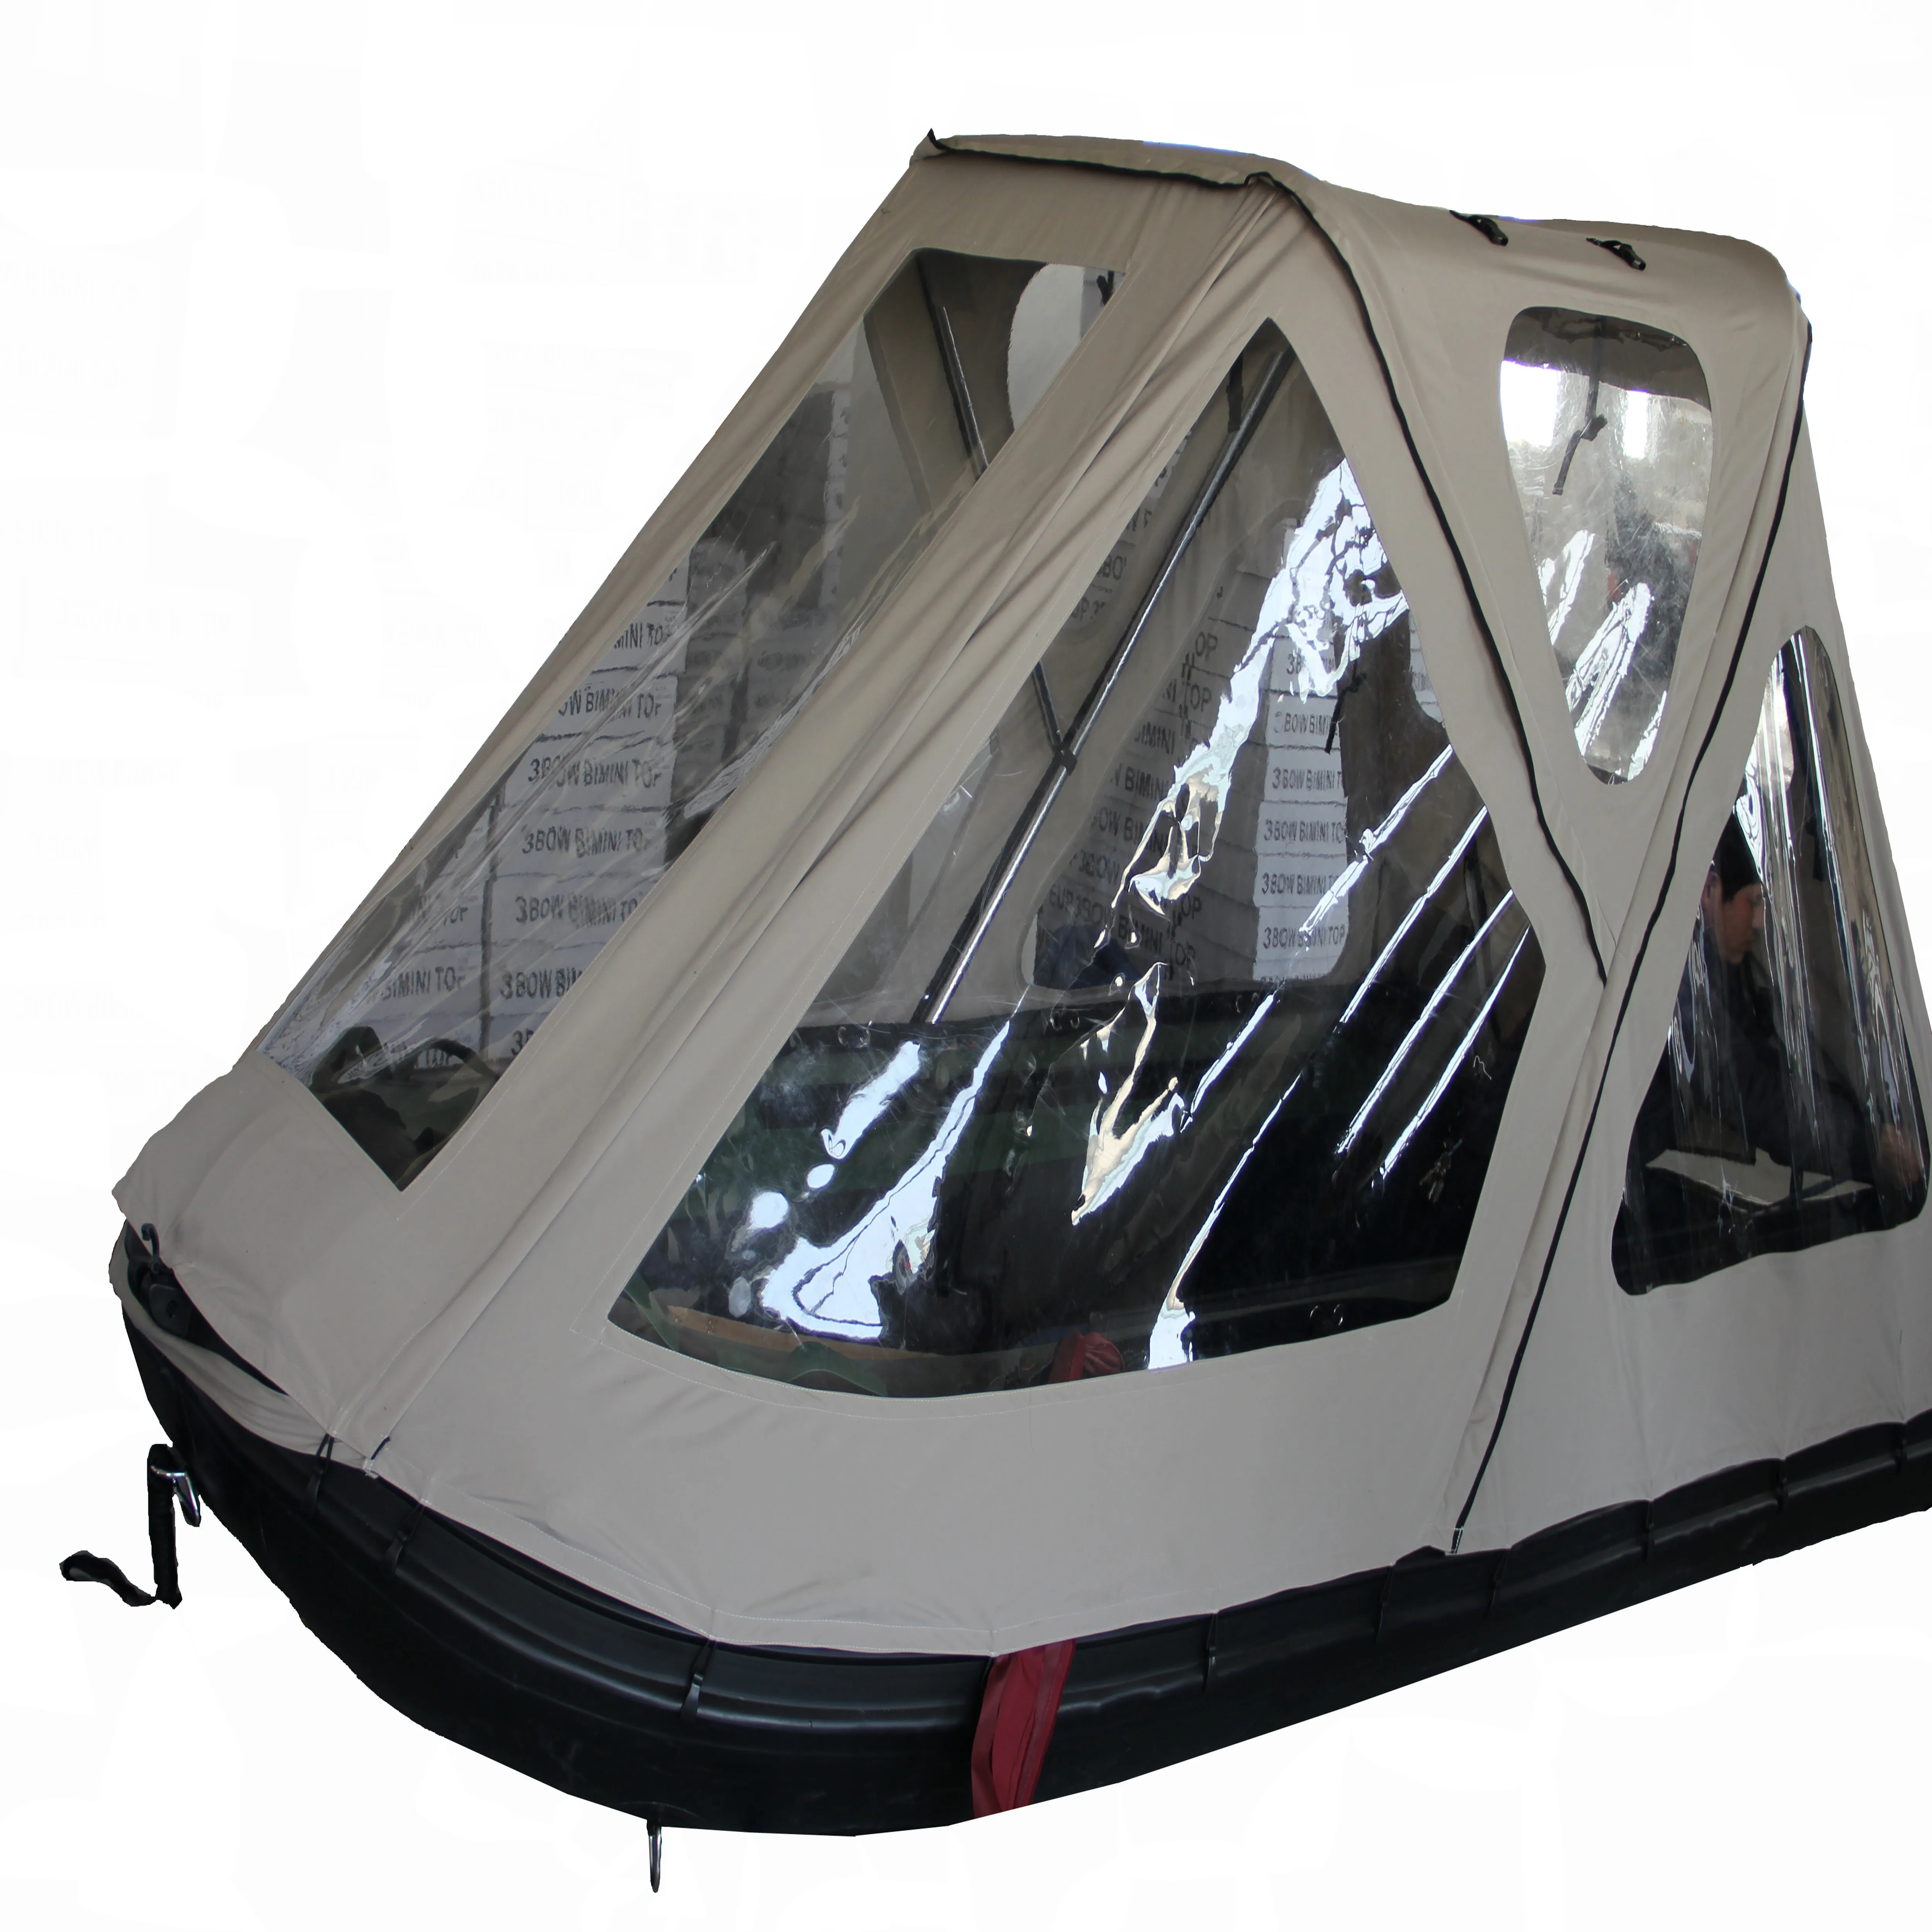 Inflatable boat grey color bimini tent